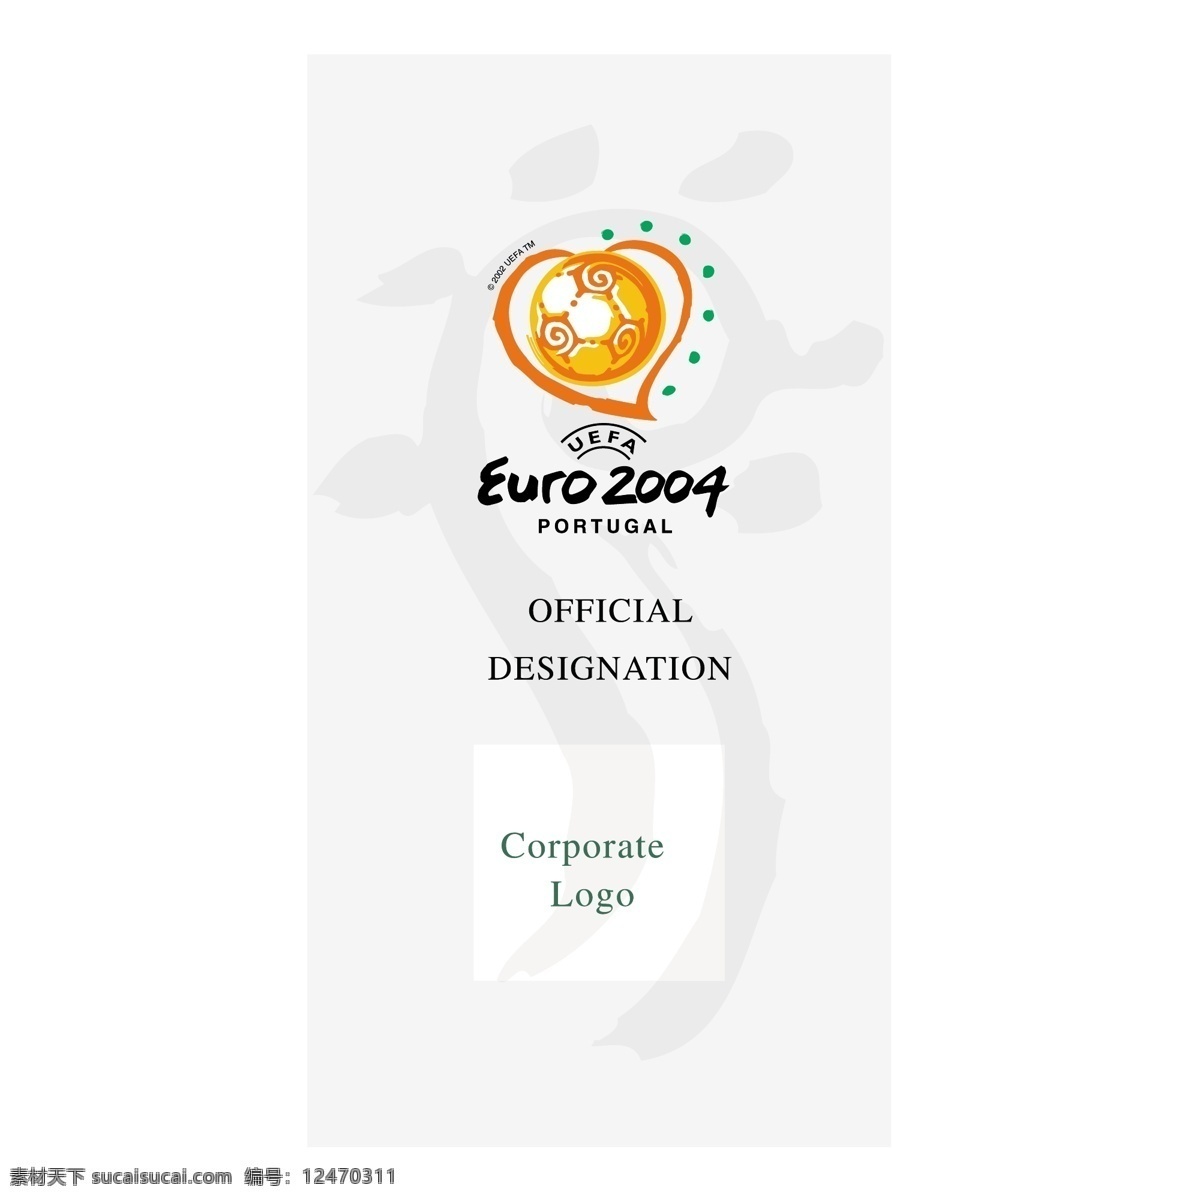 欧洲杯 2004 葡萄牙 欧 欧元 欧足联的欧元 向量 矢量 欧洲的标志 标志欧洲杯 标志 矢量图 建筑家居